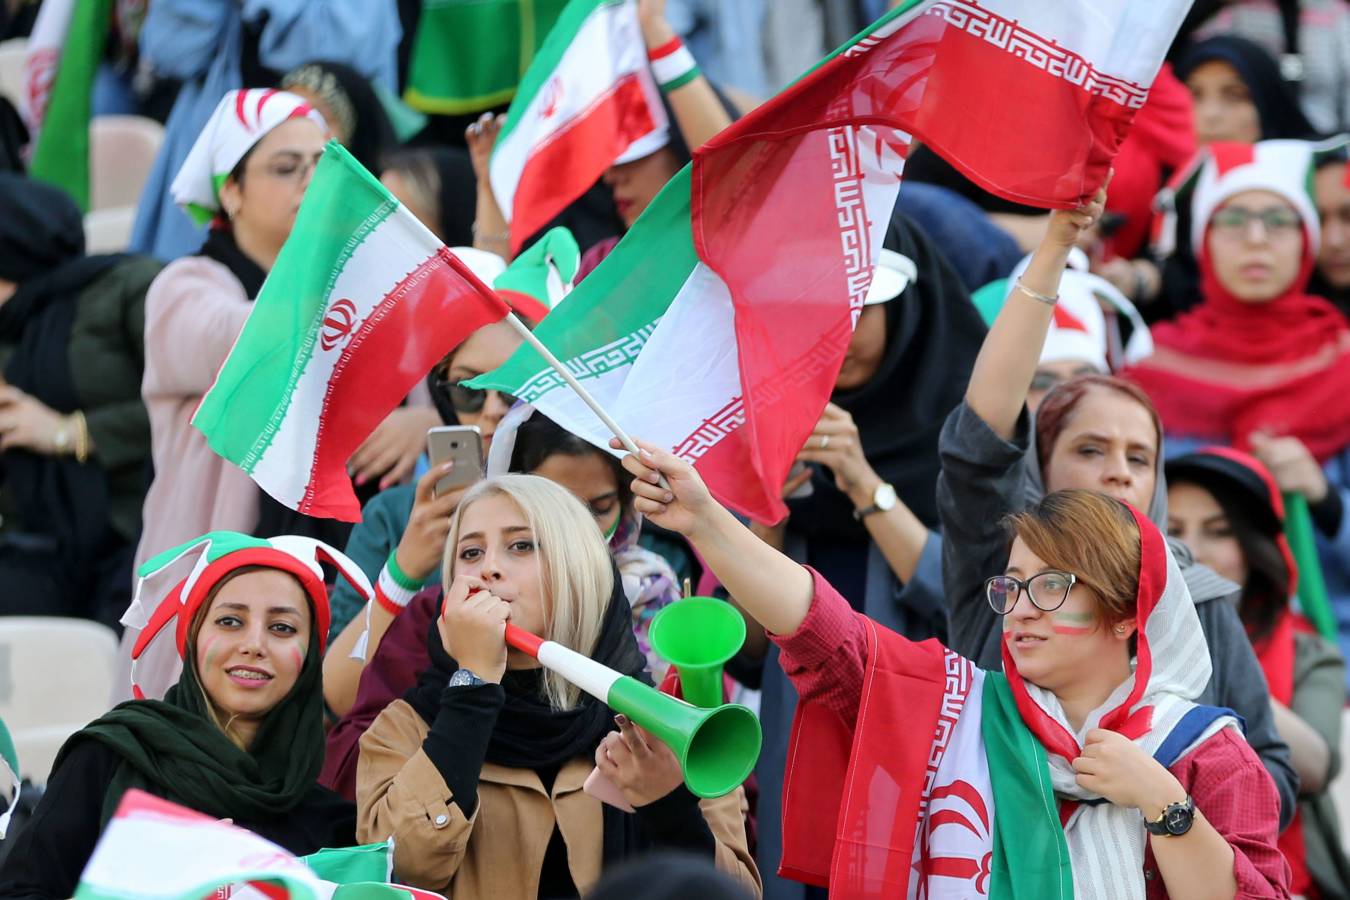 Las mujeres de Irán ya han logrado presenciar en directo un partido de su selección nacional. Hasta ahora no podían hacerlo. Un paso más. 